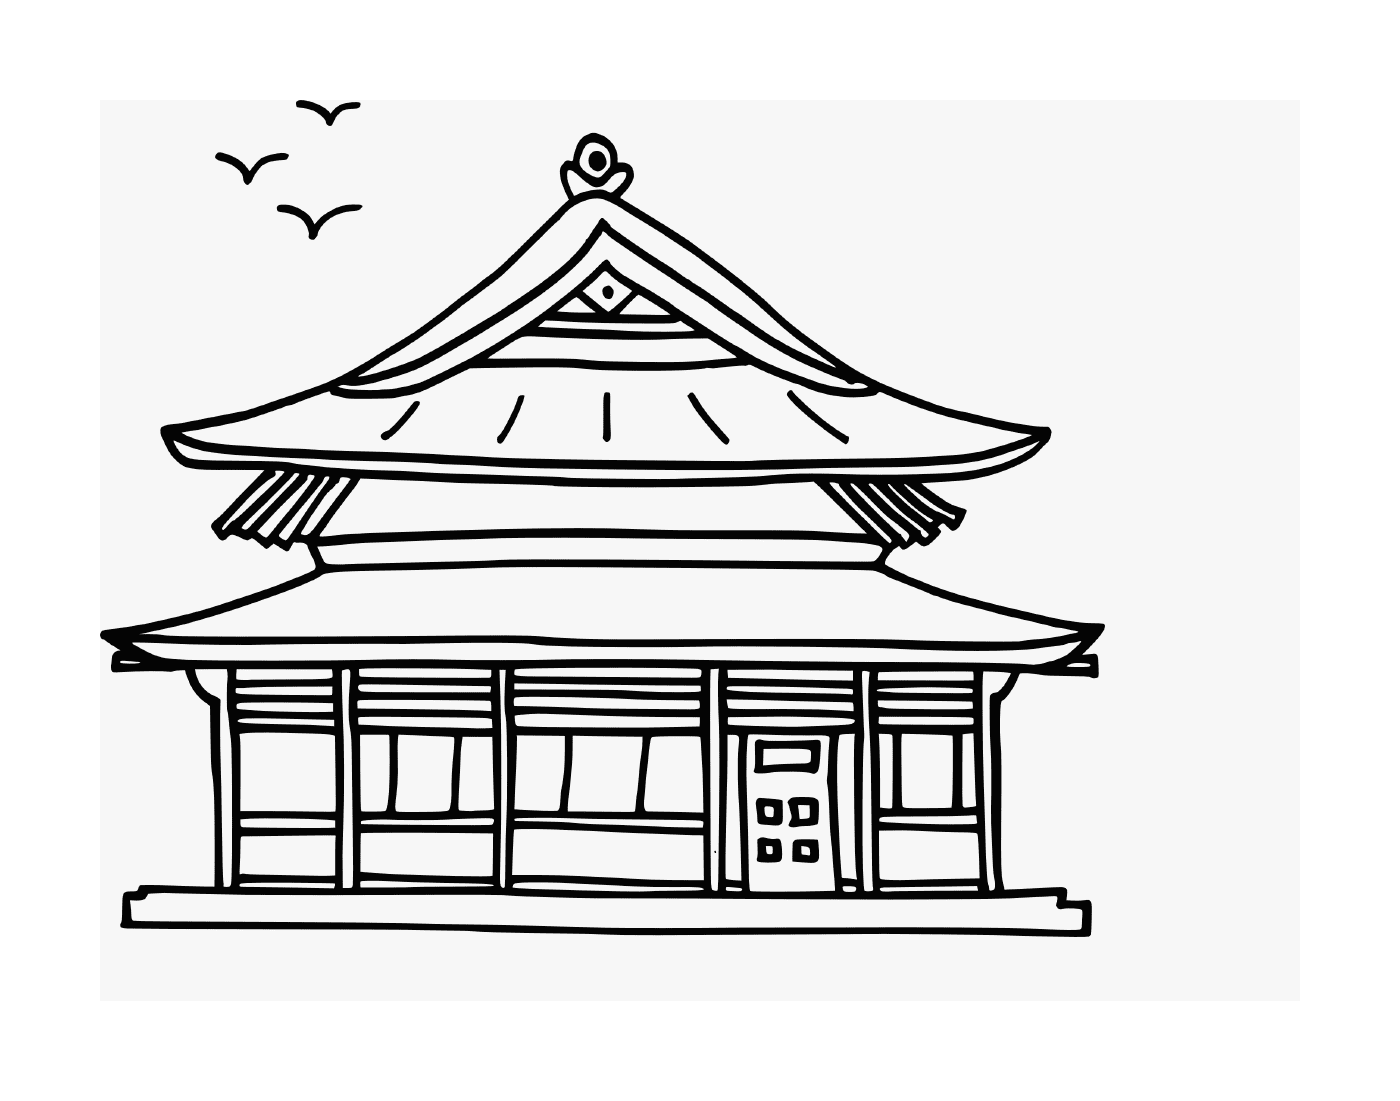   maison asiatique traditionnelle exotique 